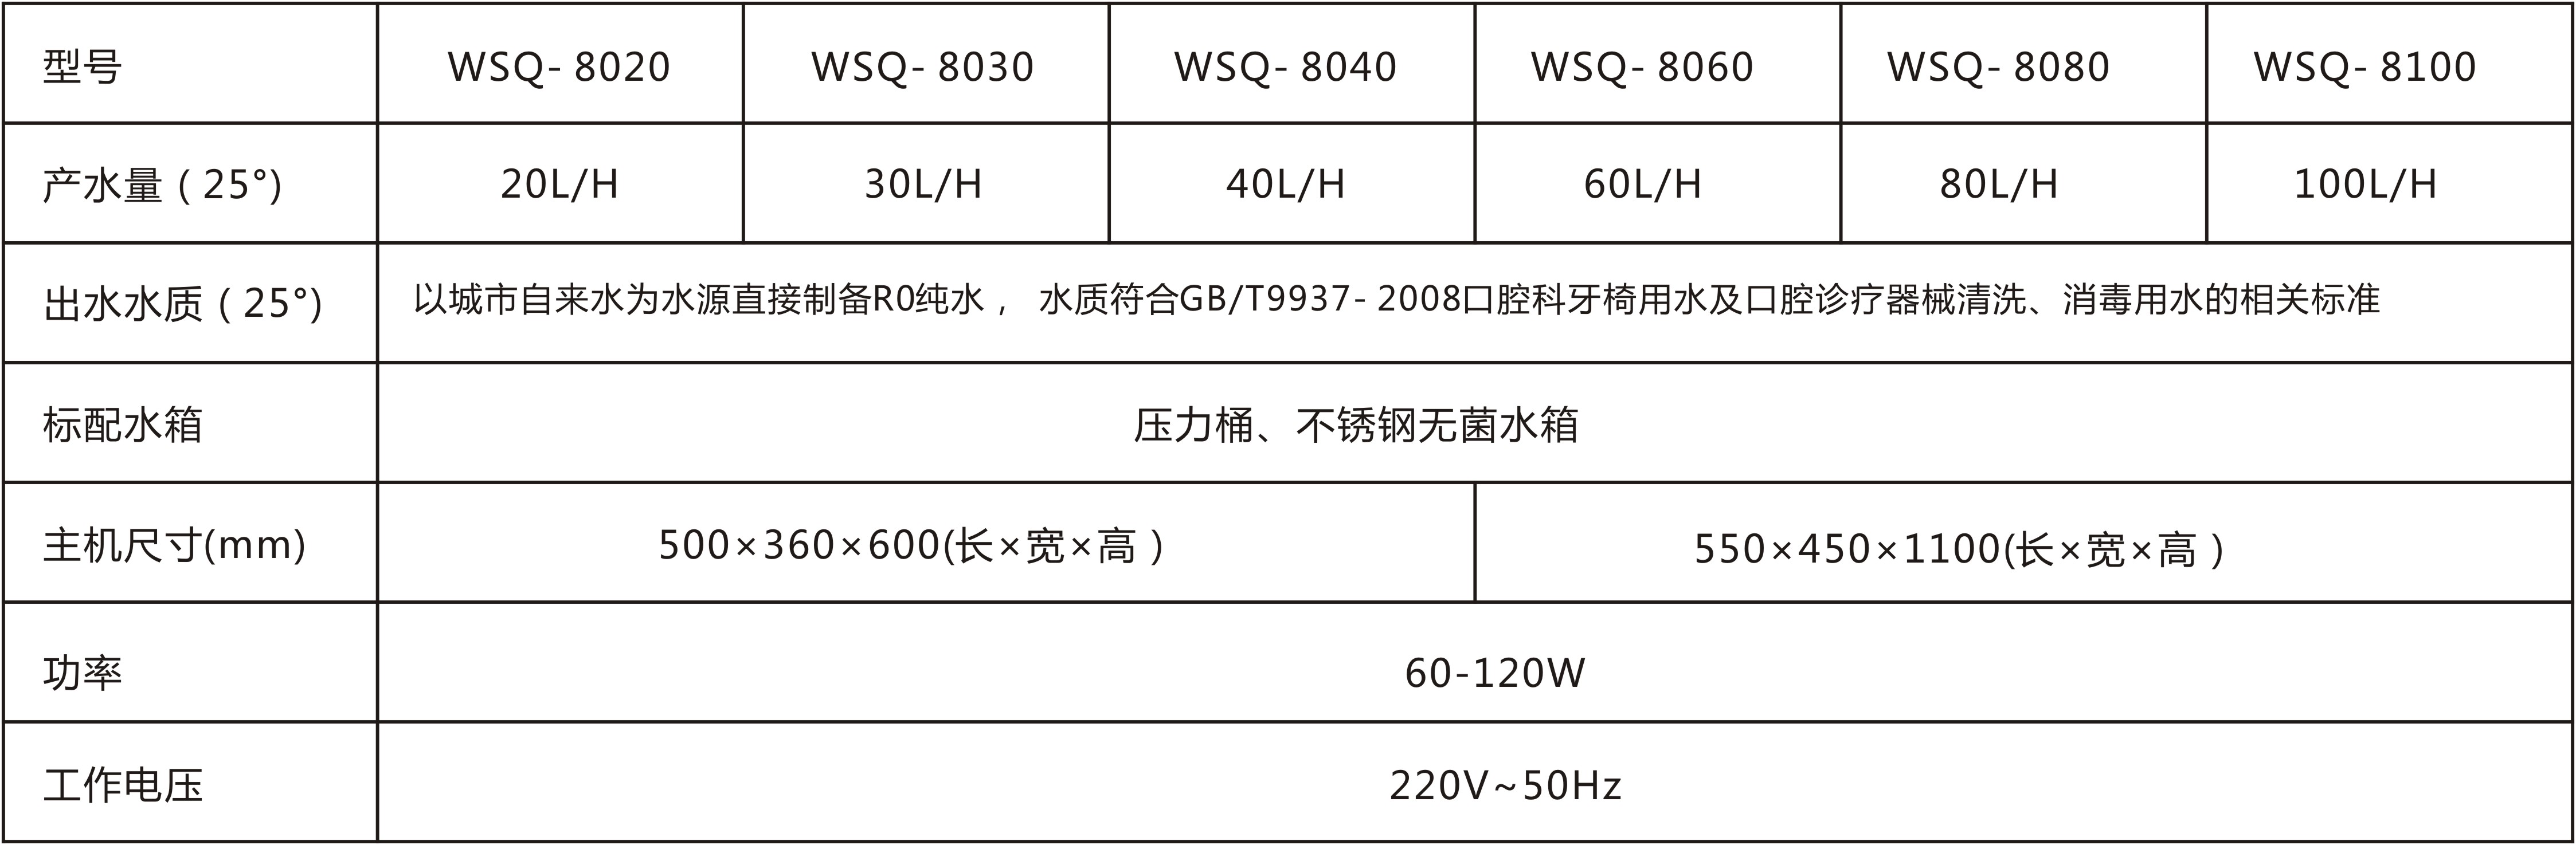 WSQ-8000系列口腔科纯化水系统